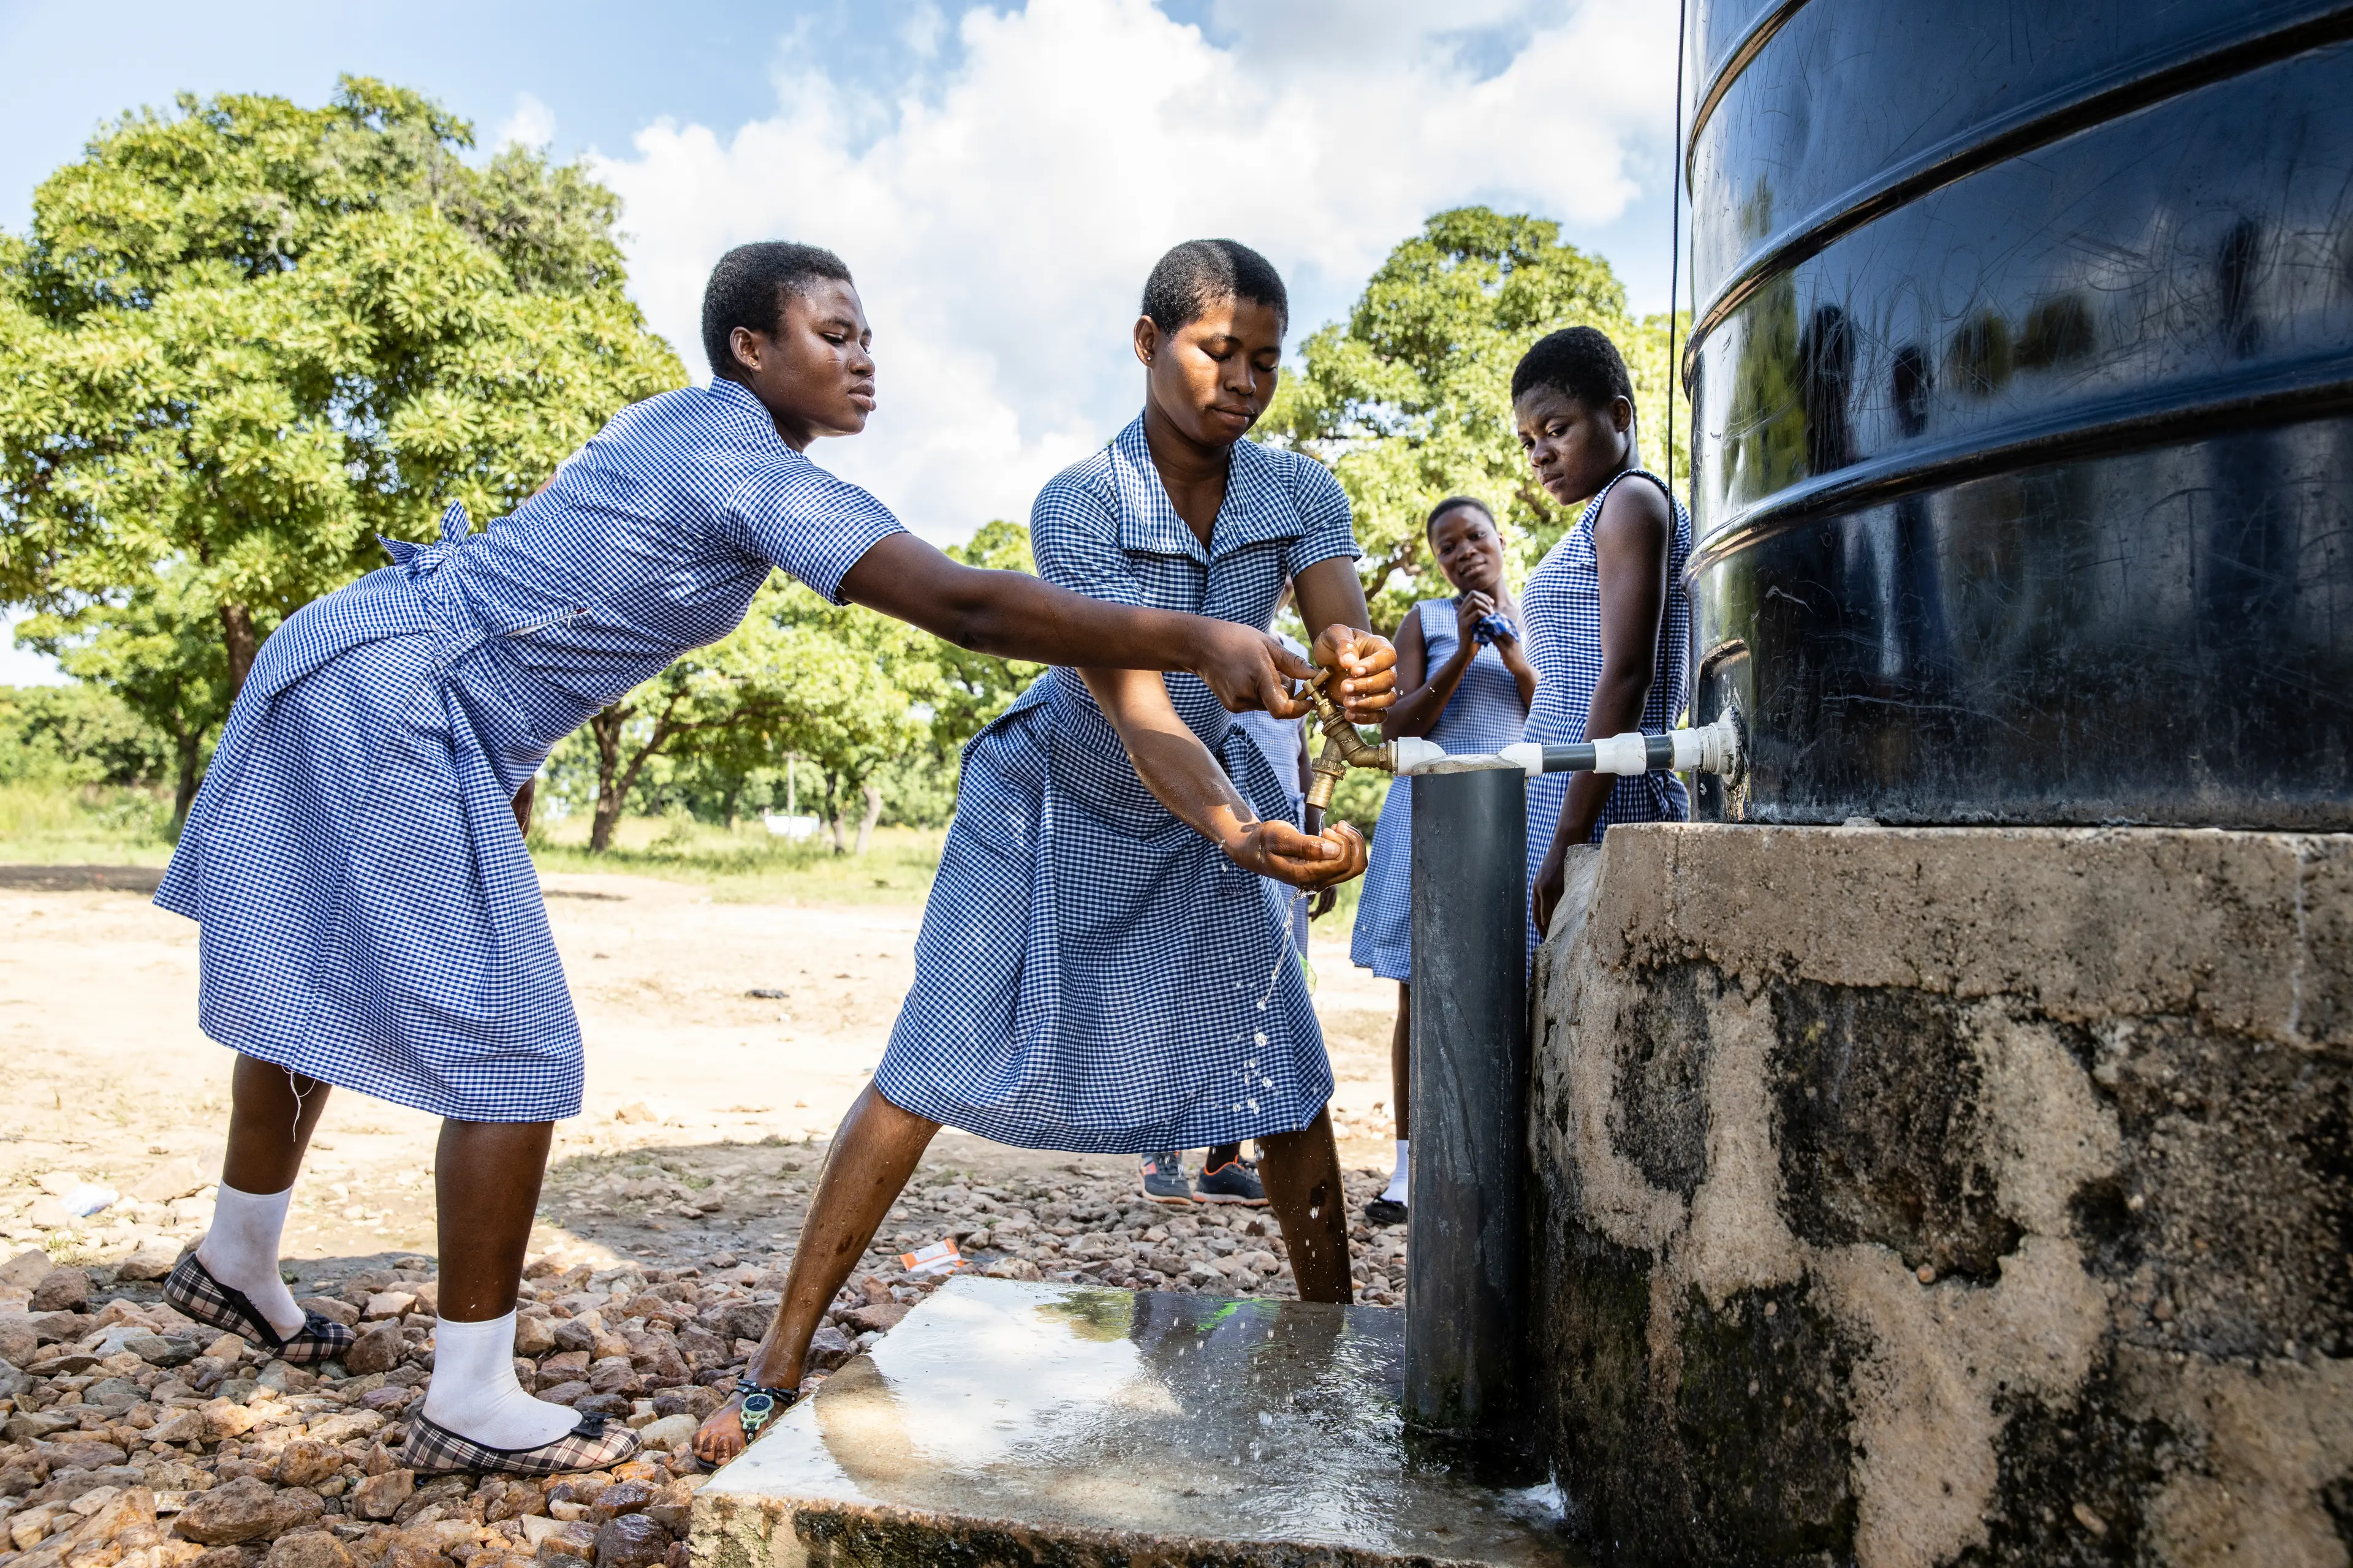 Schülerinnen waschen sich die Hände vor einem Wassertank. Sie tragen alle eine Schuluniform.